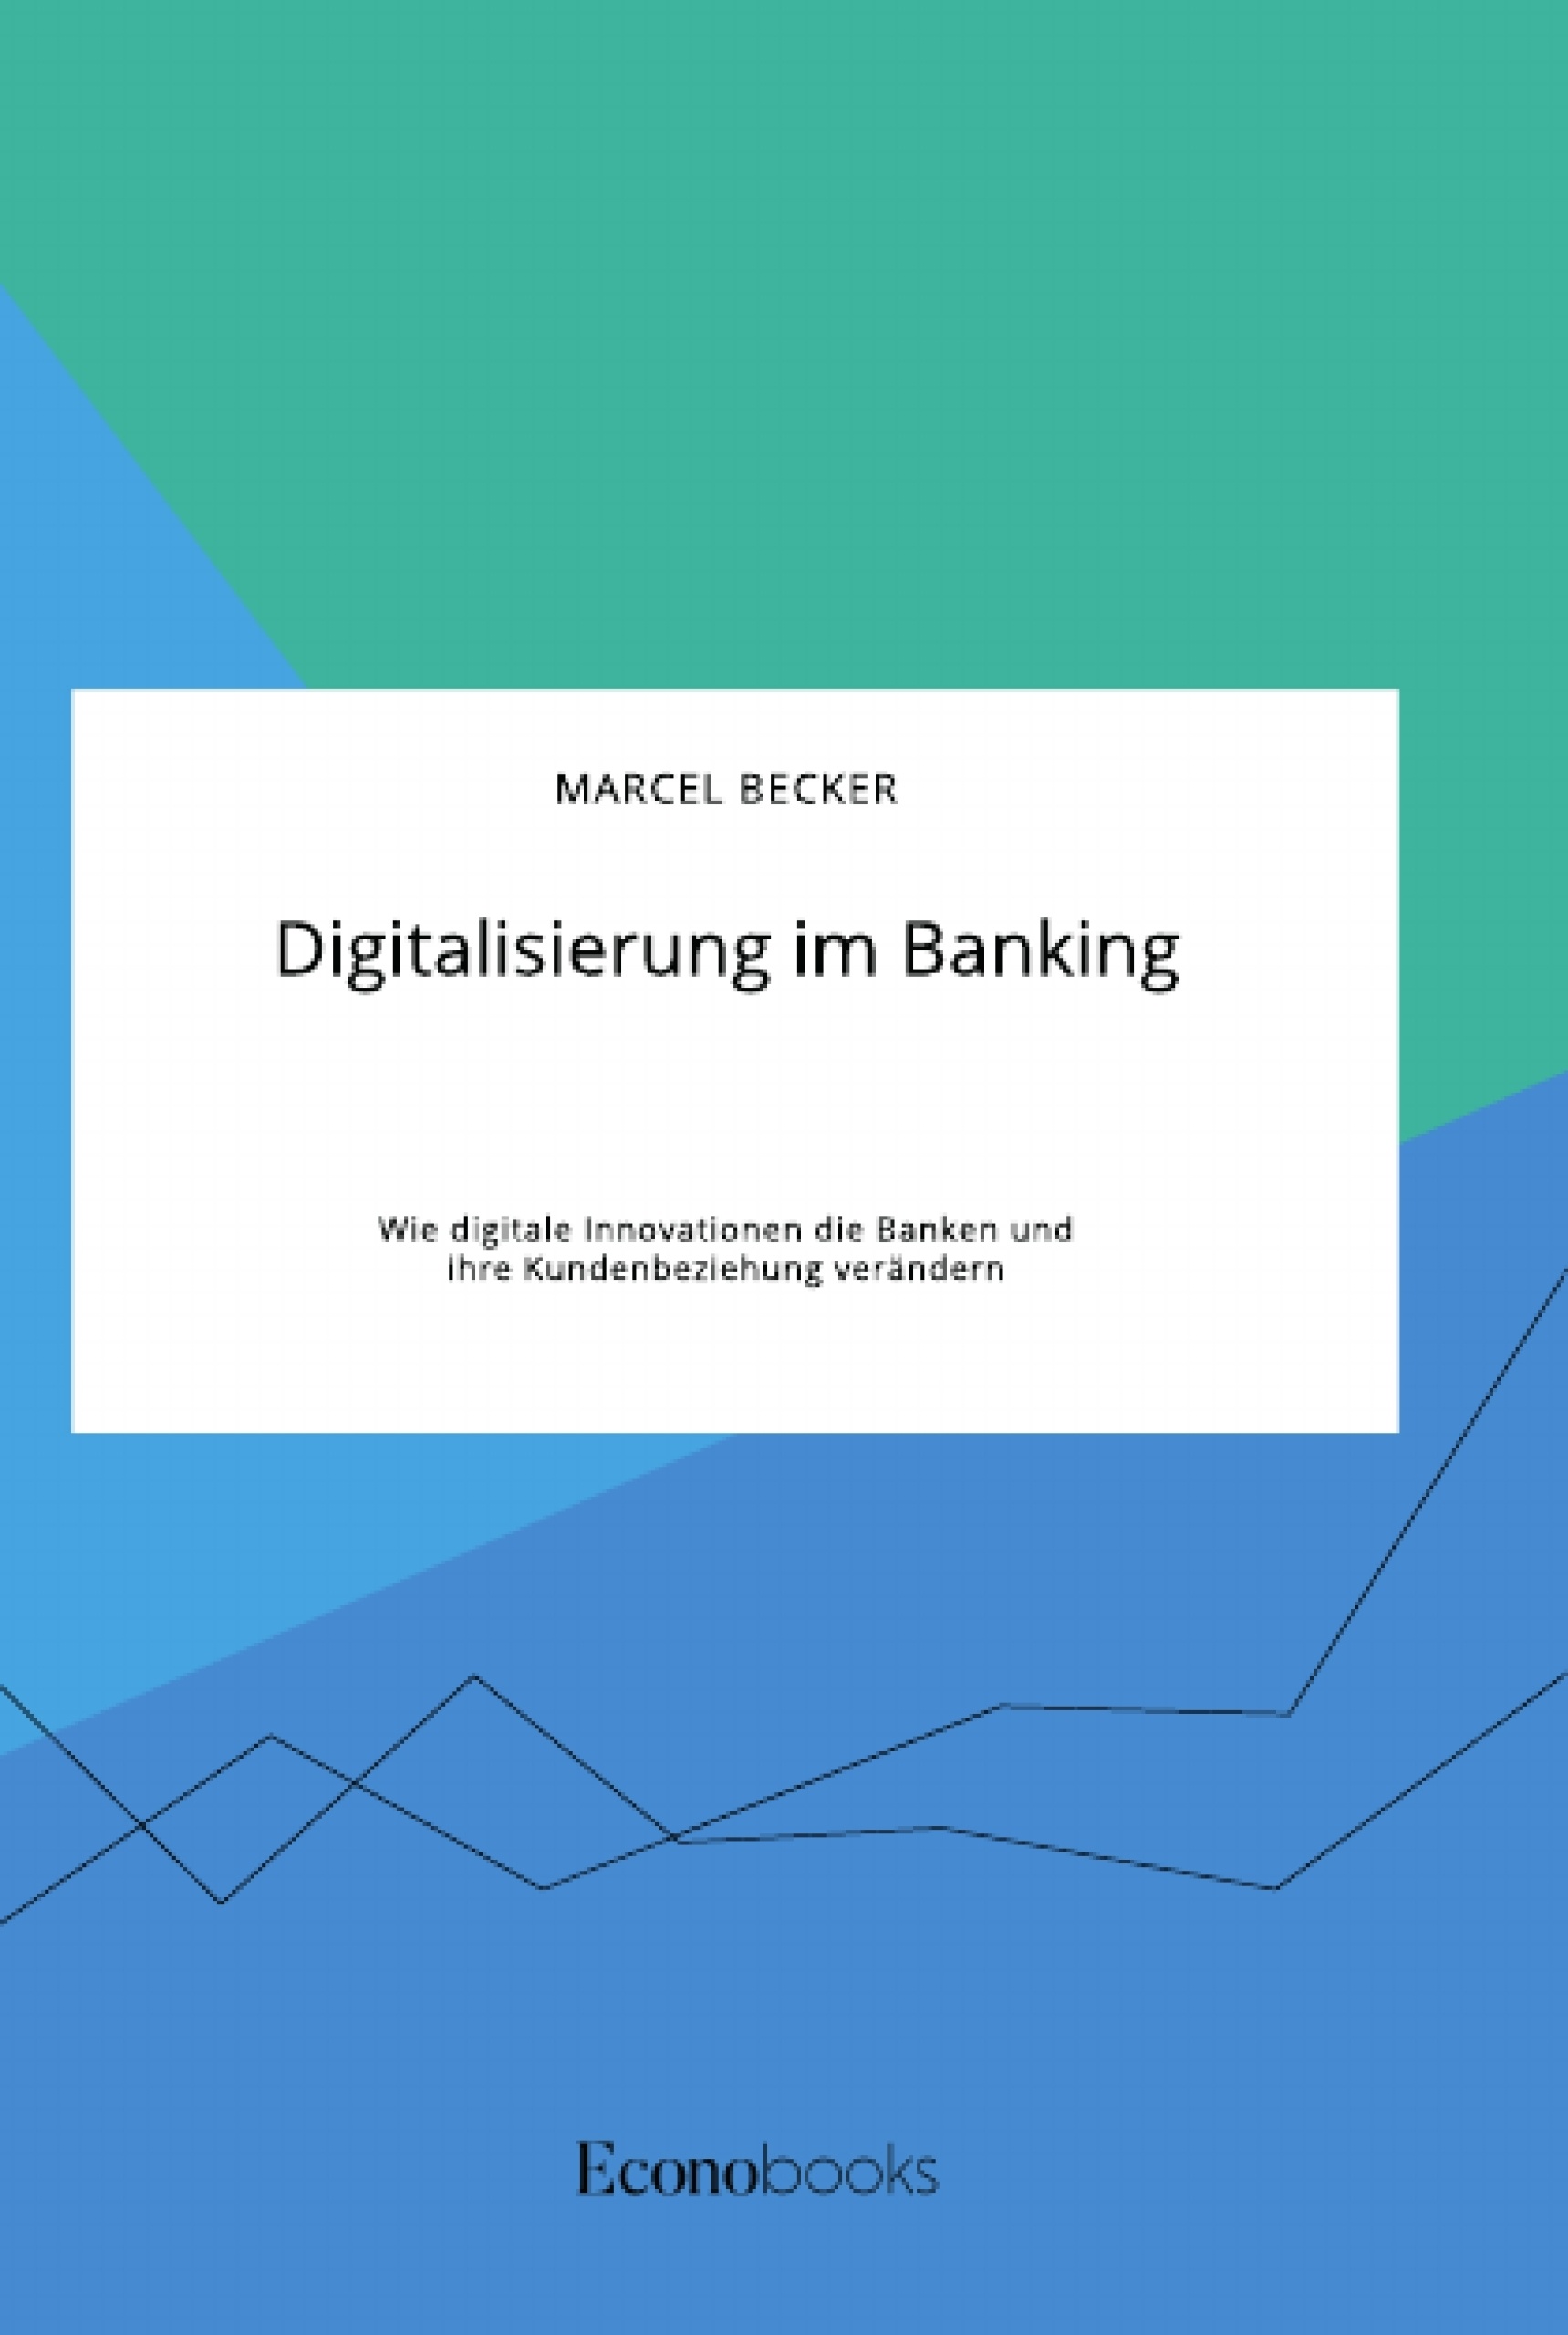 Titel: Digitalisierung im Banking. Wie digitale Innovationen die Banken und ihre Kundenbeziehung verändern